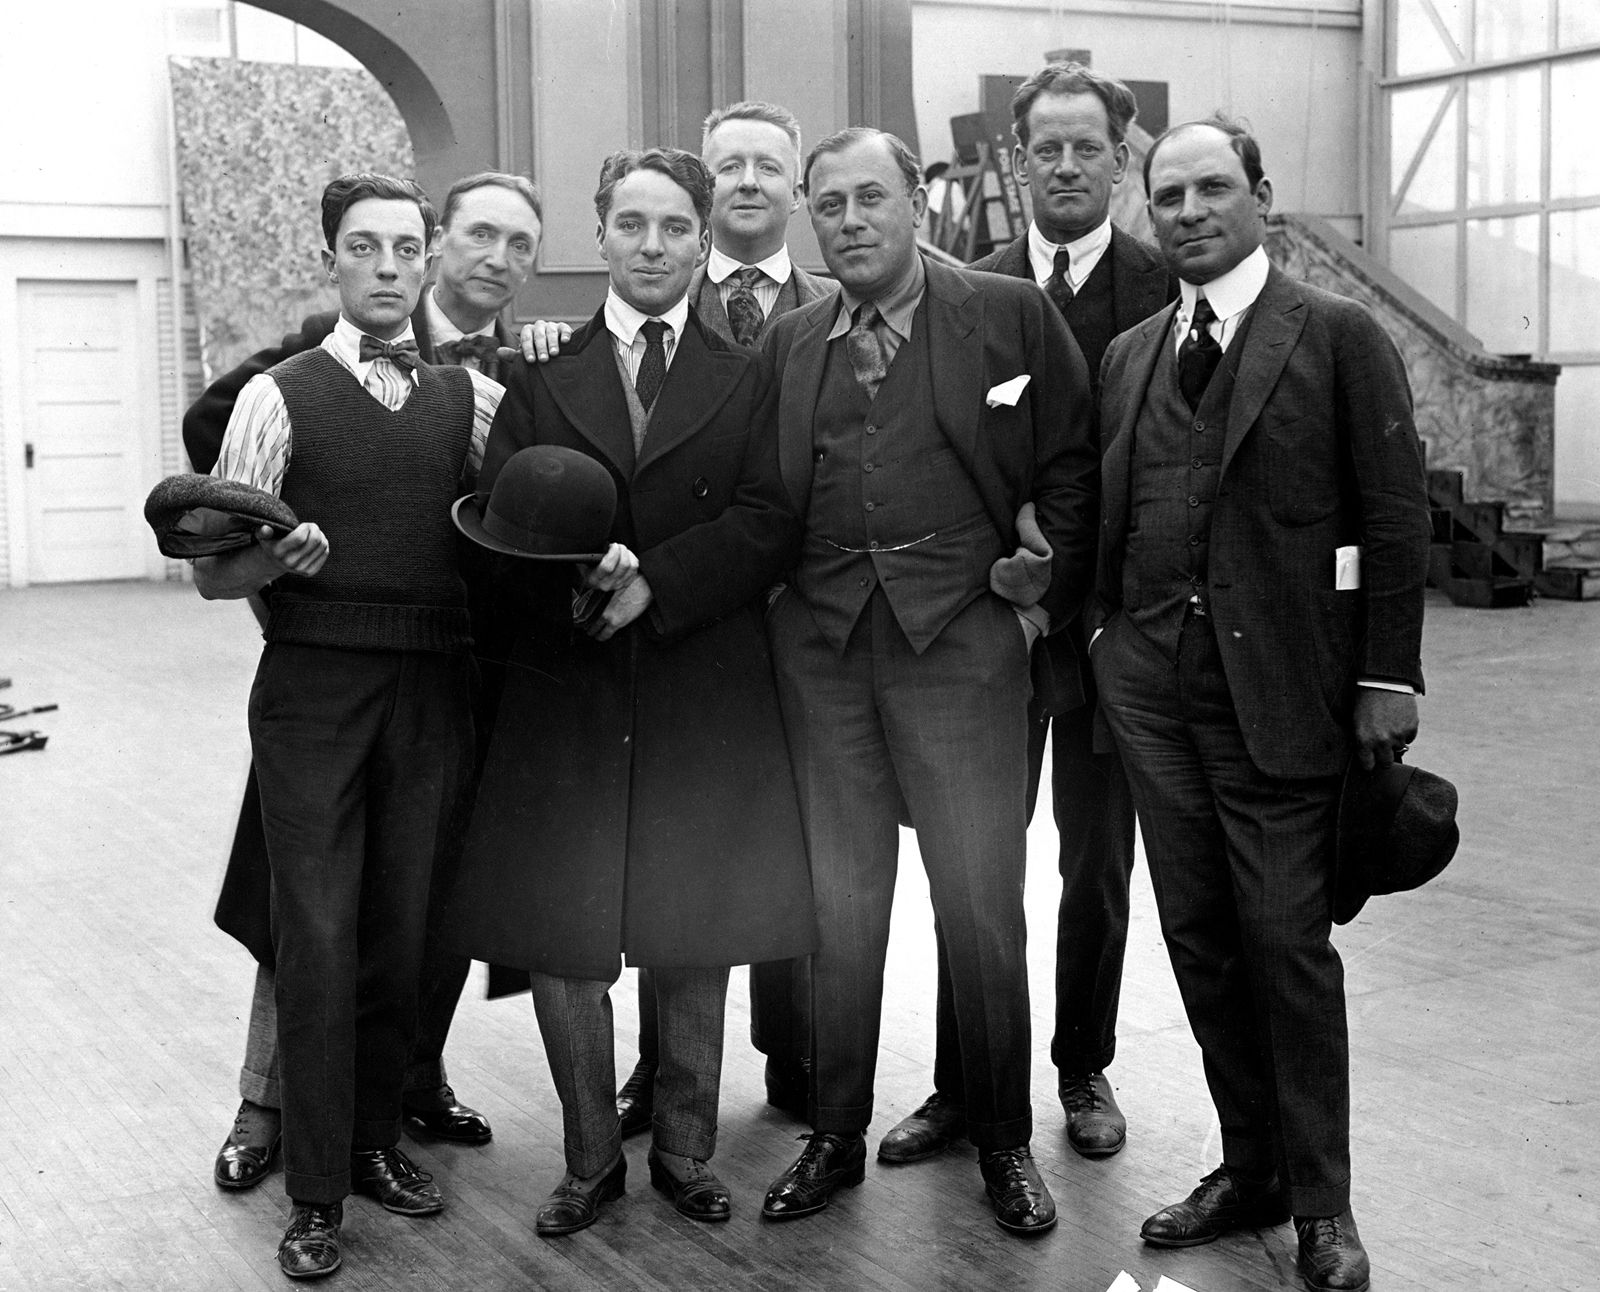 REUTERs-บัสเตอร์ คีตัน-ชาร์ลี แชปลิน (ที่ 3 จากซ้าย) โกนหนวดเมื่อปี 1918 ช่วงที่ชาติตะวันตกรณรงค์ว่าการไว้หนวดเคราเป็นแหล่งเชื้อโรค.JPG